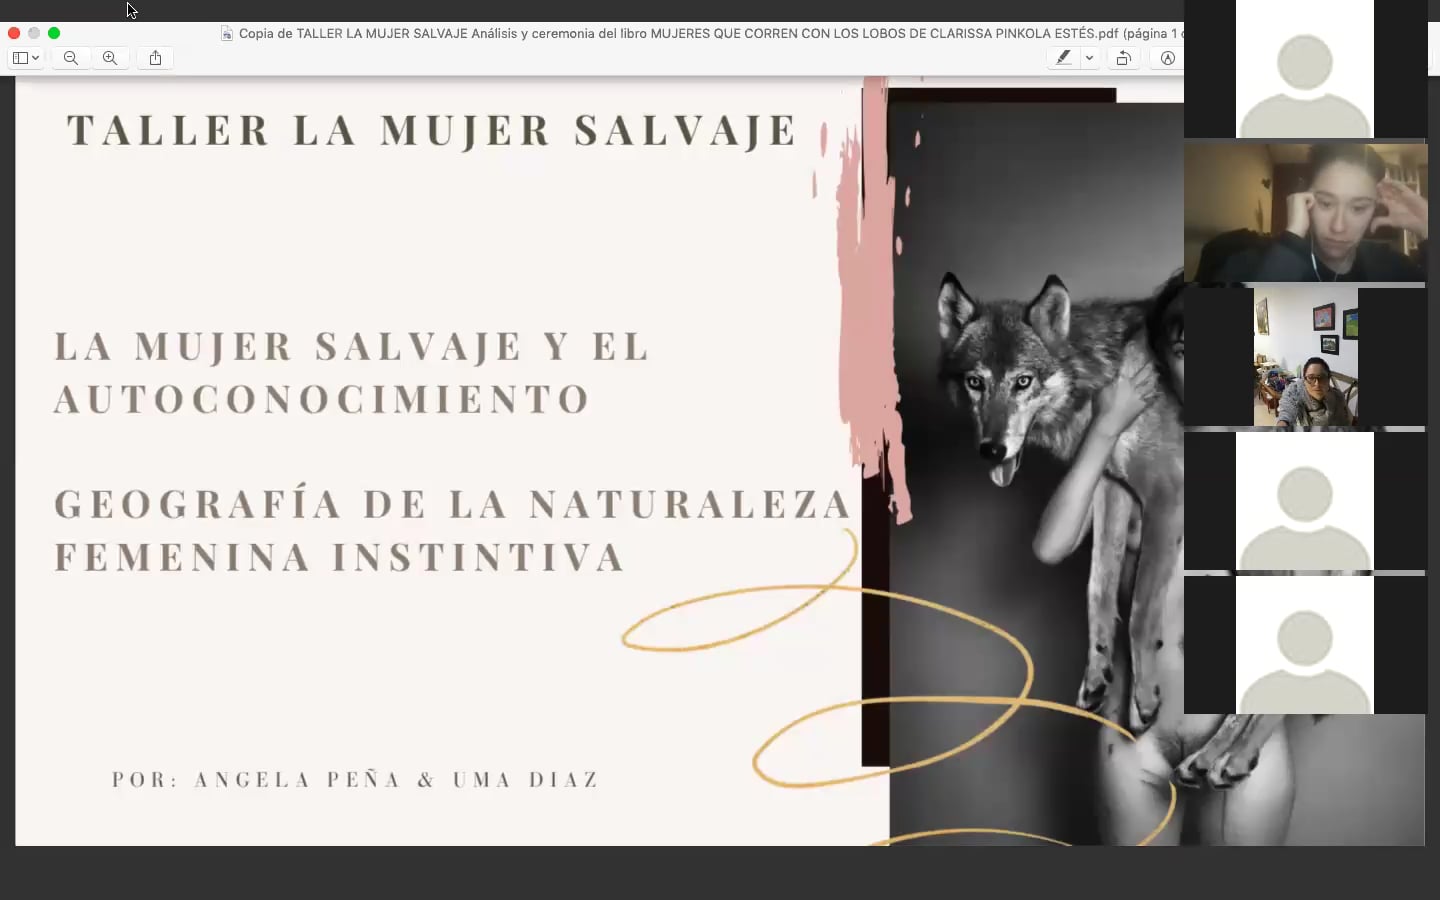 LA MUJER SALVAJE Y EL AUTOCONOCIMIENTO / GEOGRAFÍA DE LA NATURALEZA  FEMENINA INSTINTIVA on Vimeo